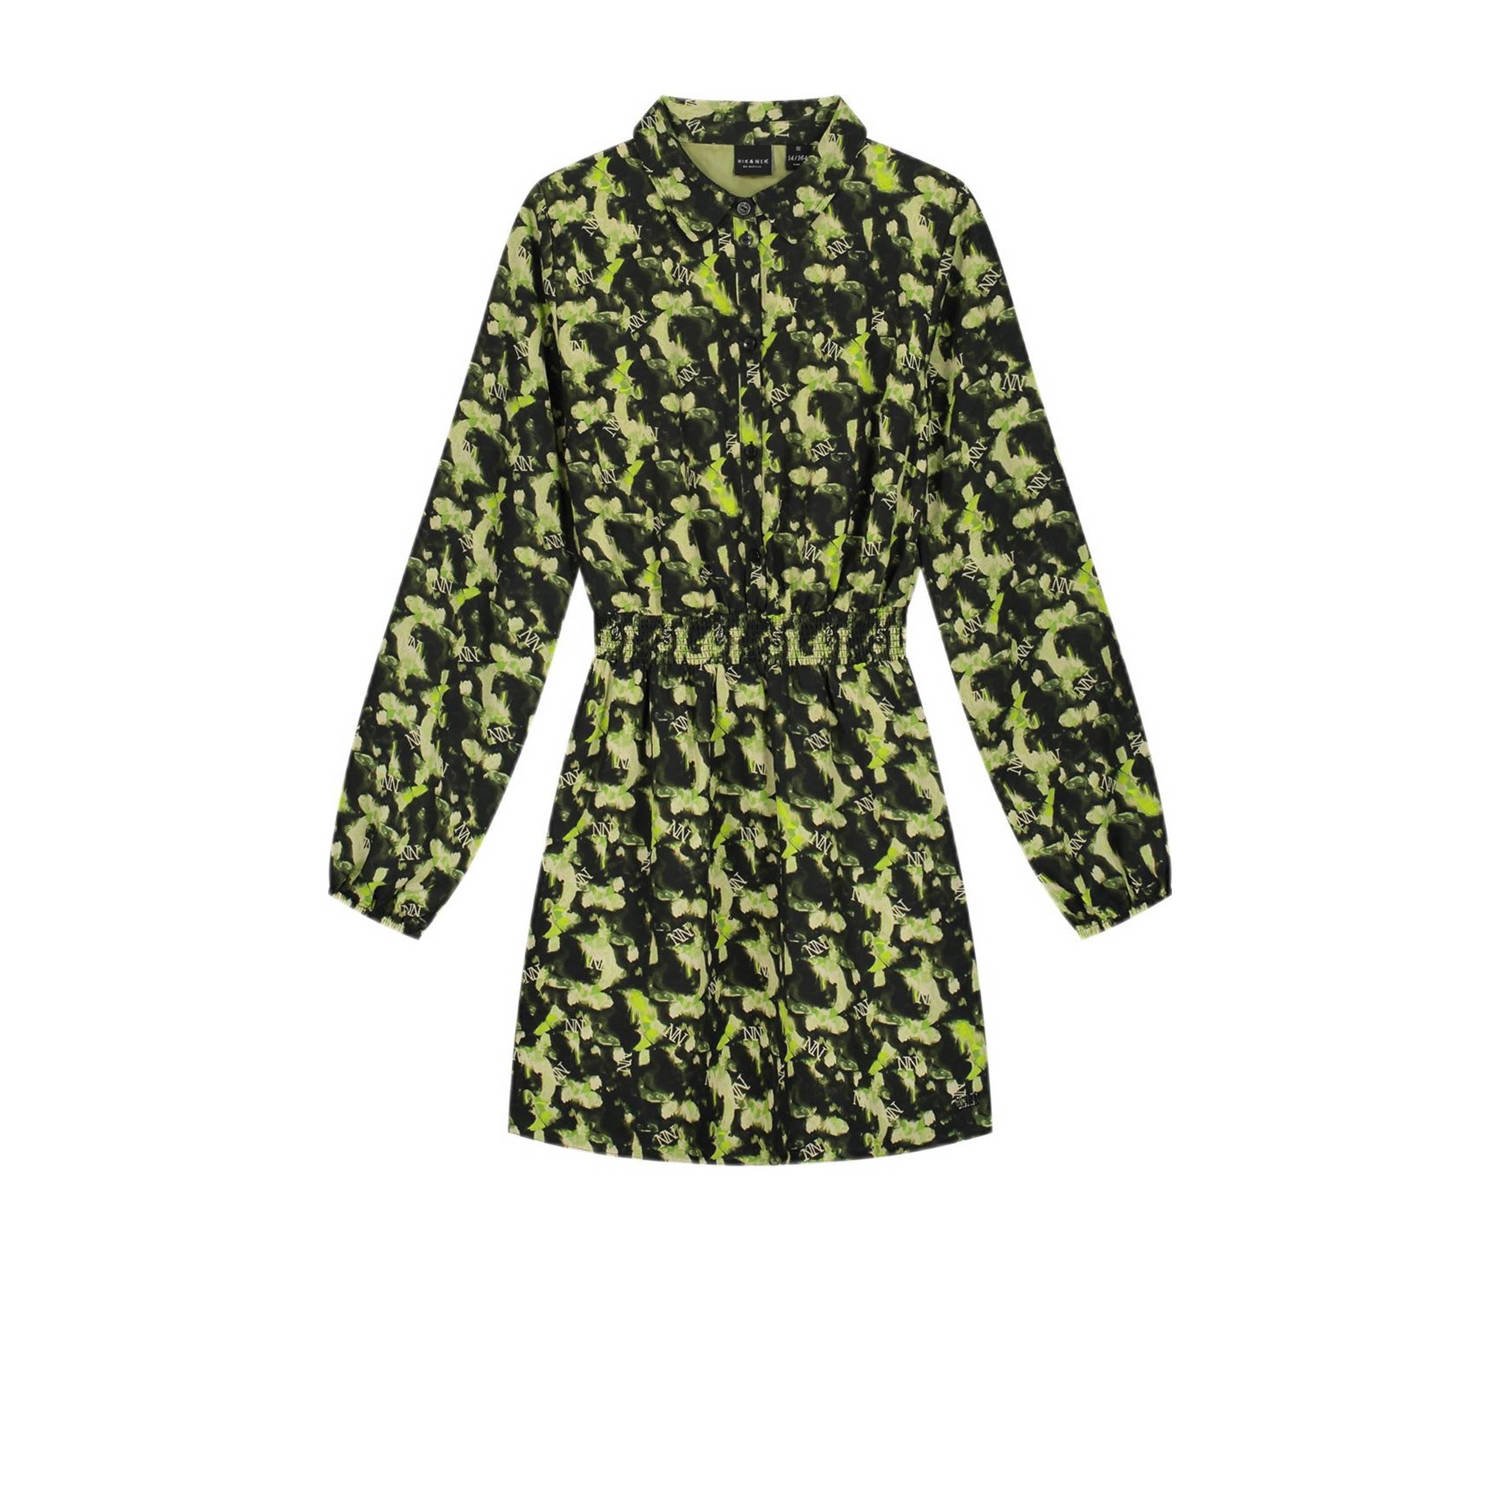 NIK&NIK gebloemde blousejurk Vonne licht groen olijfgroen